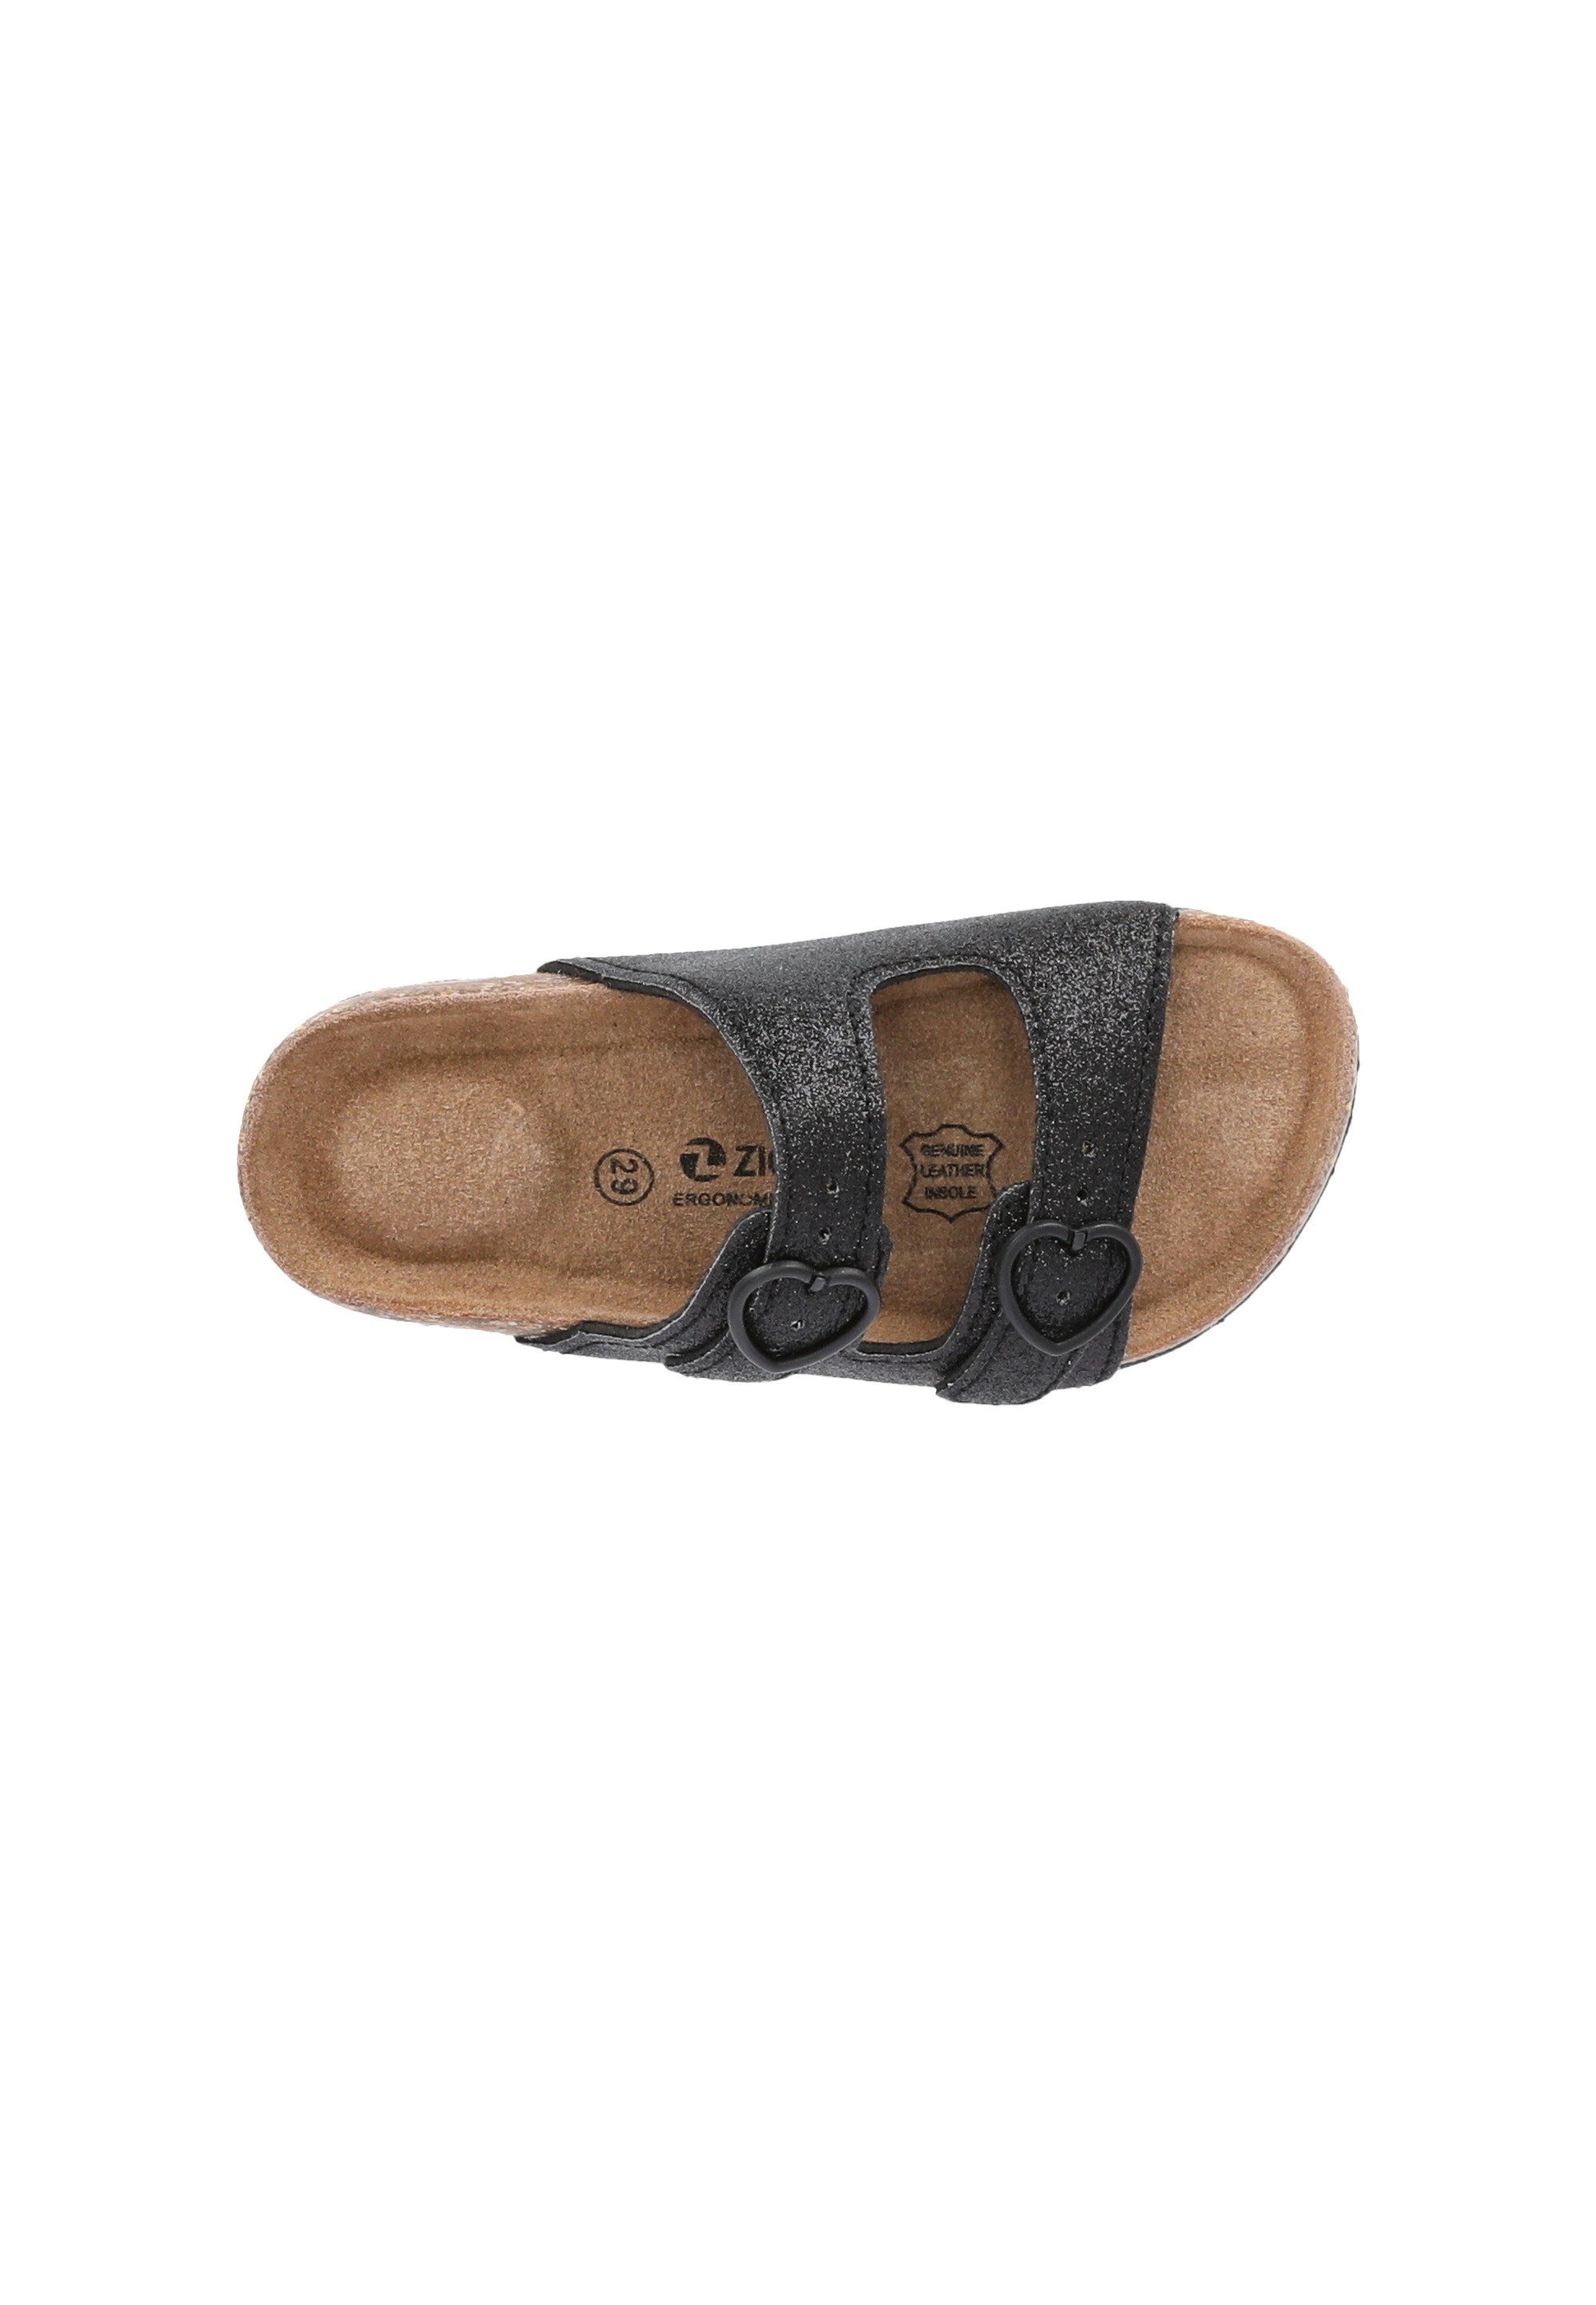 Messina hochwertigen Sandale aus Naturmaterialien ZIGZAG schwarz